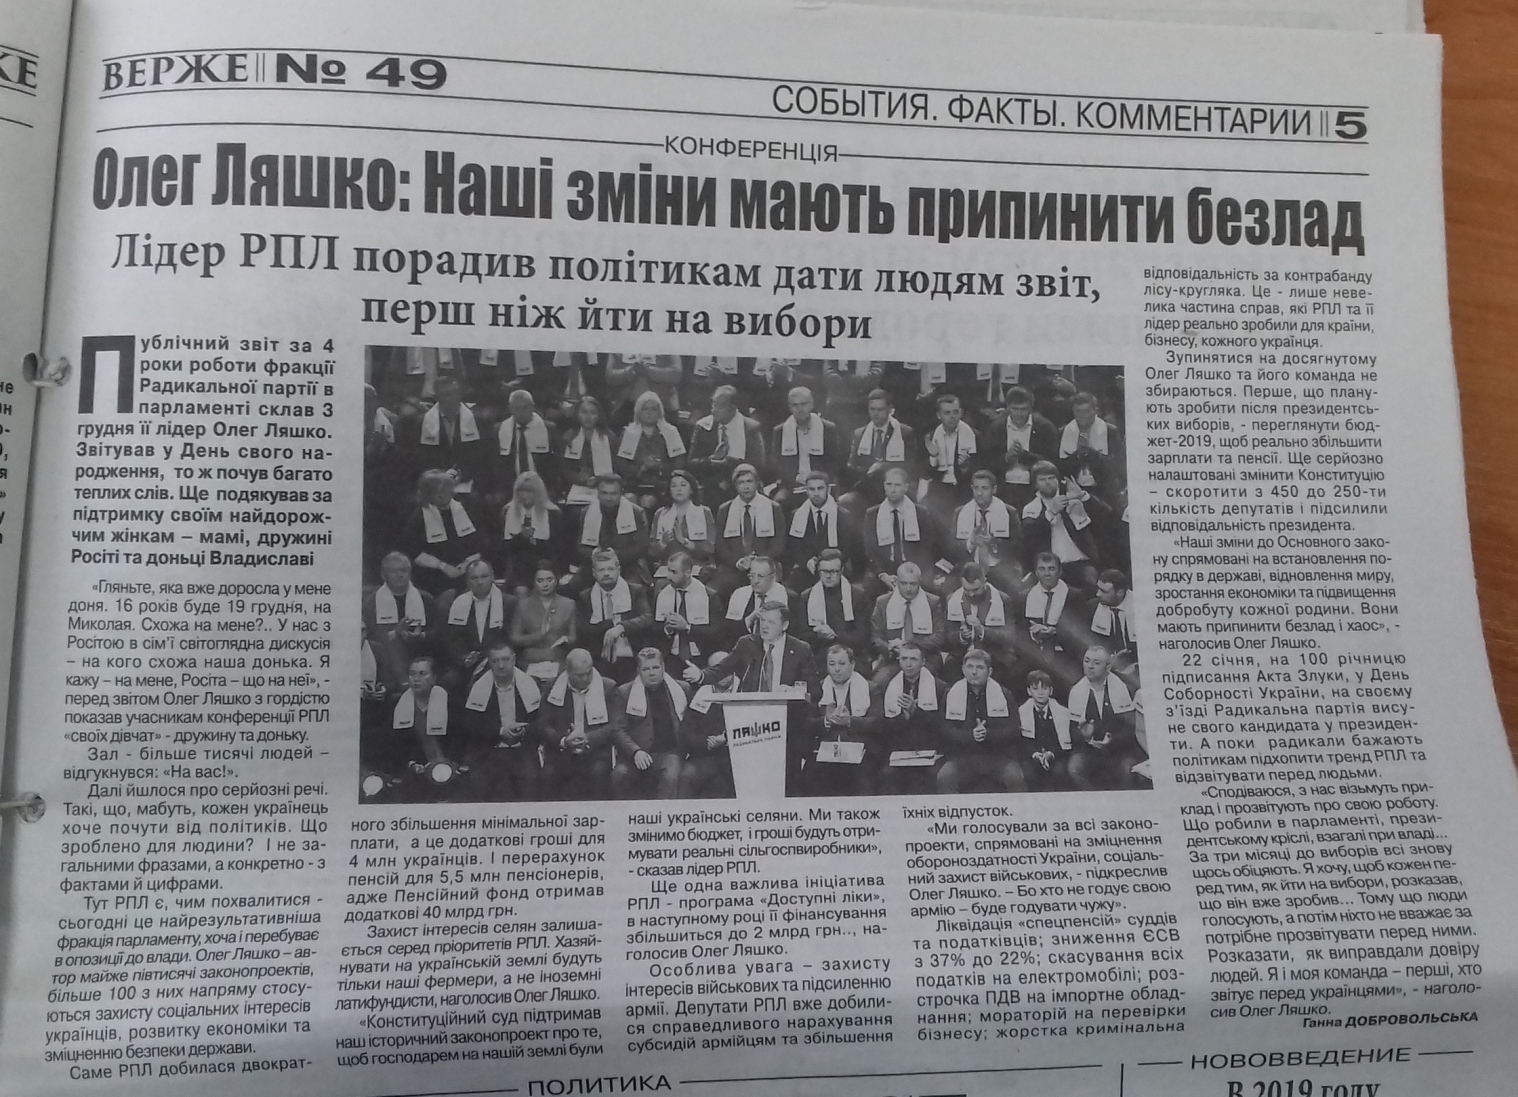 news 14 01 2019 Zaporizhzhia publikaciya v gazeti Verzhe 2